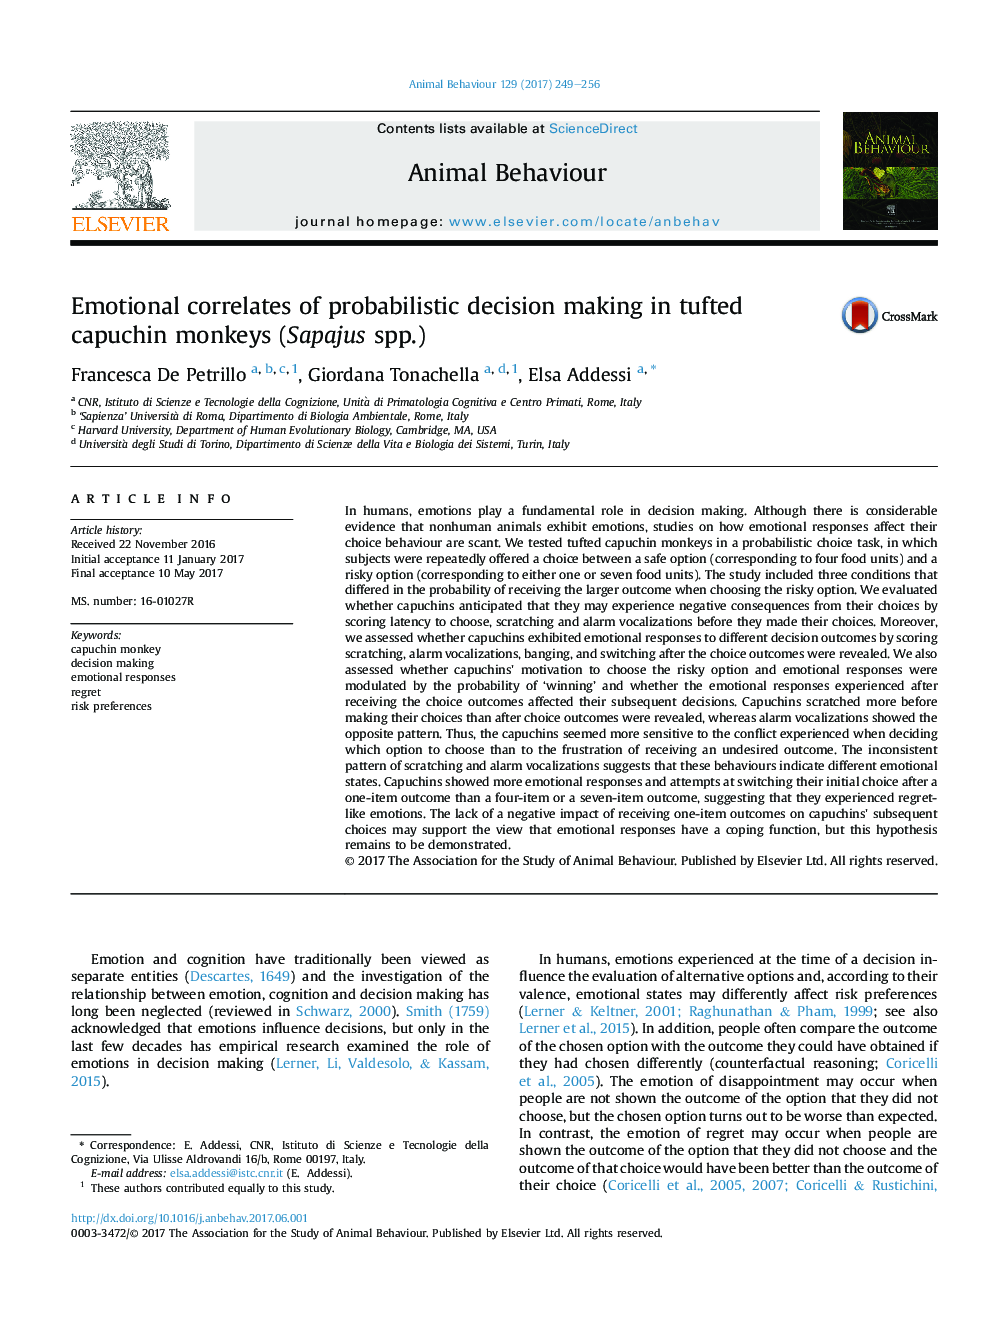 Emotional correlates of probabilistic decision making in tufted capuchin monkeys (Sapajus spp.)